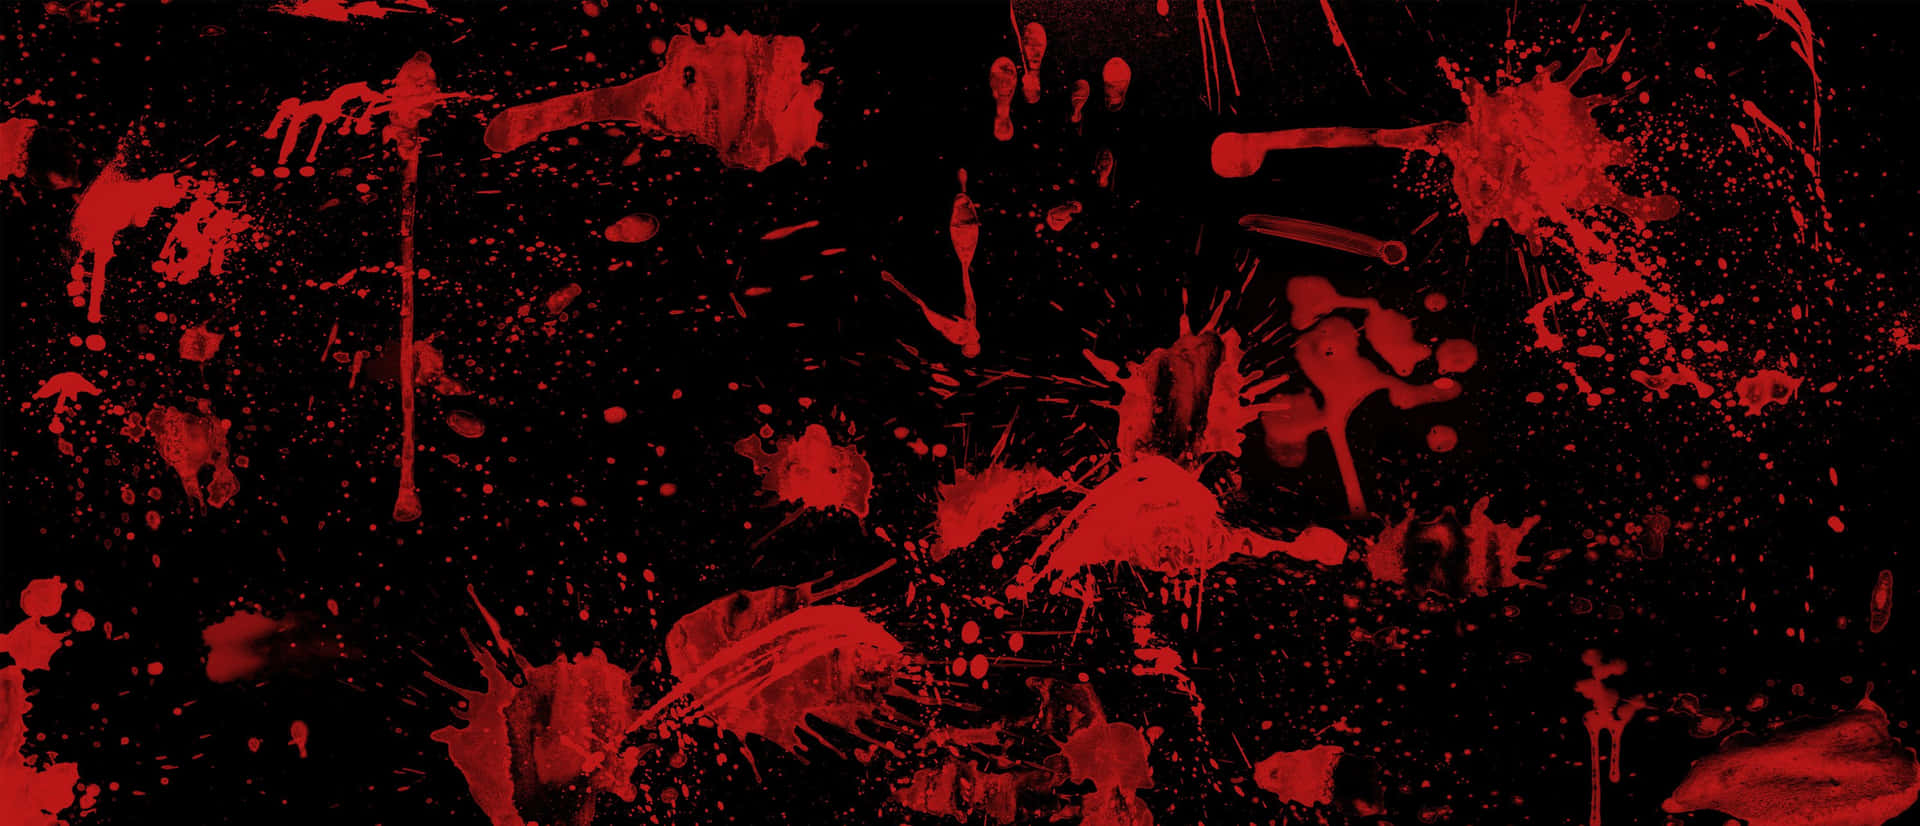 Portrait Red And Black Blood Splatter Background